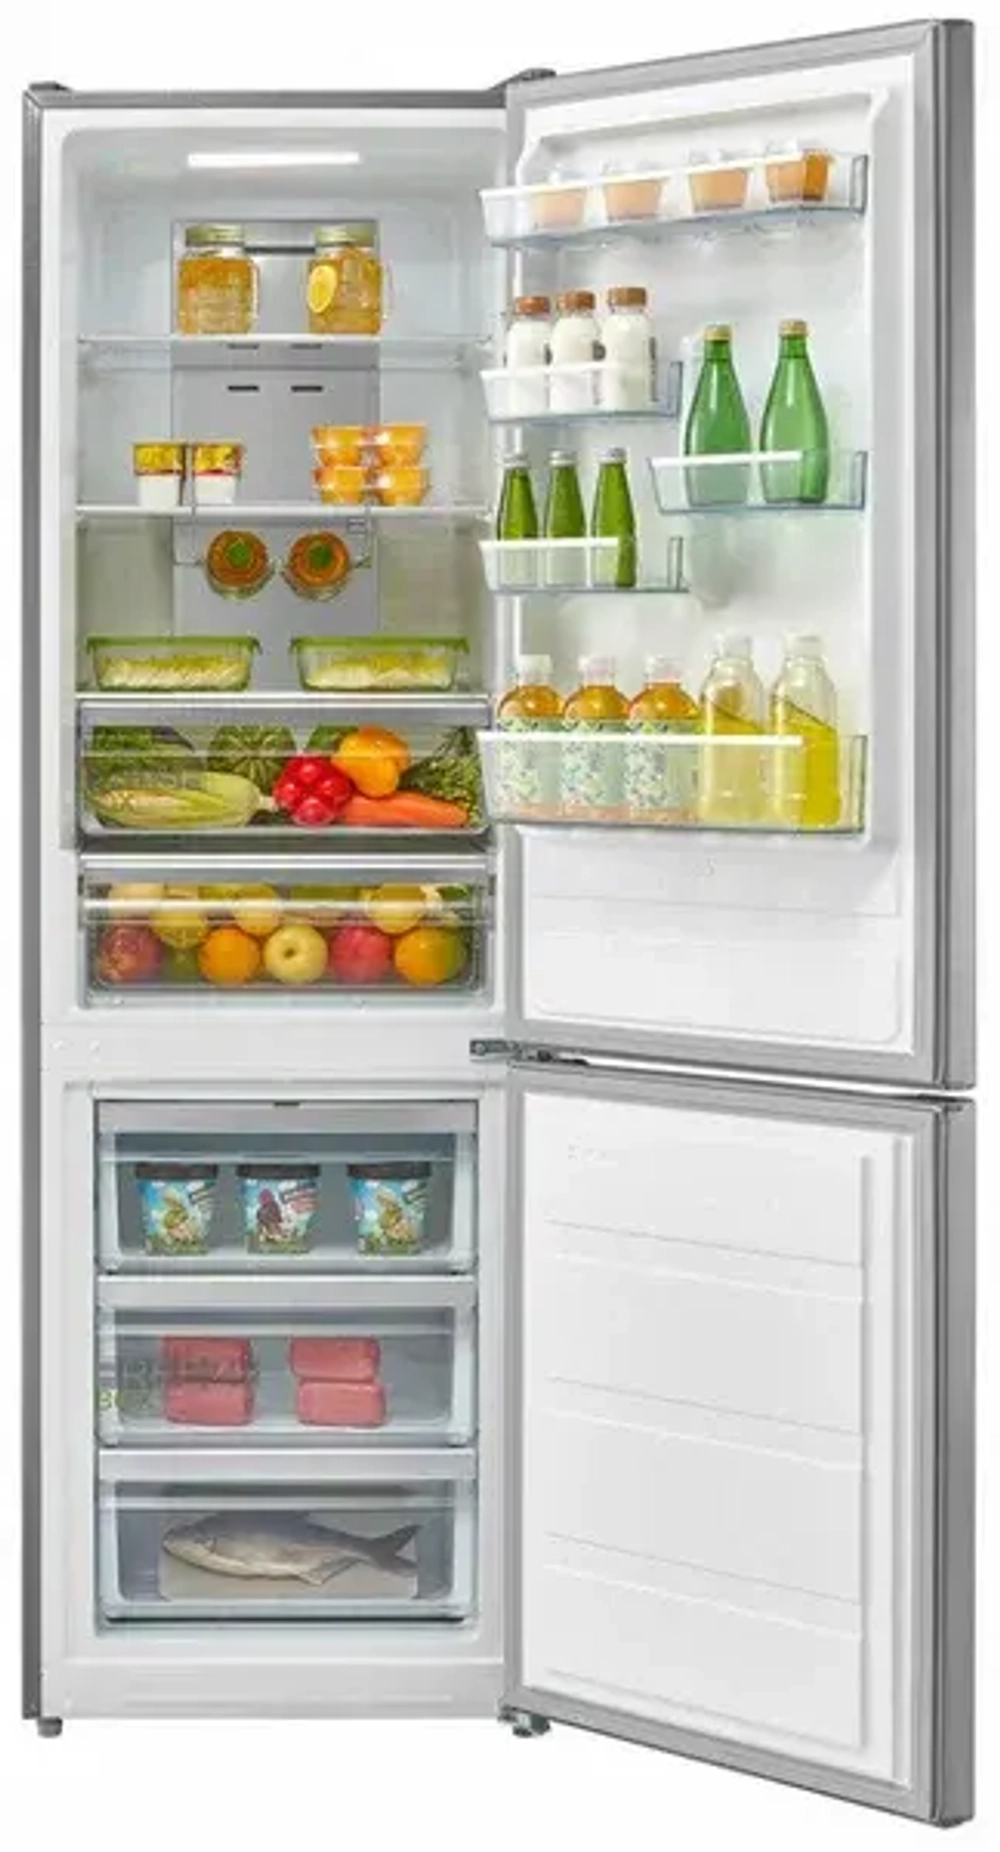 Холодильник многодверный Midea MRC519SFNX1